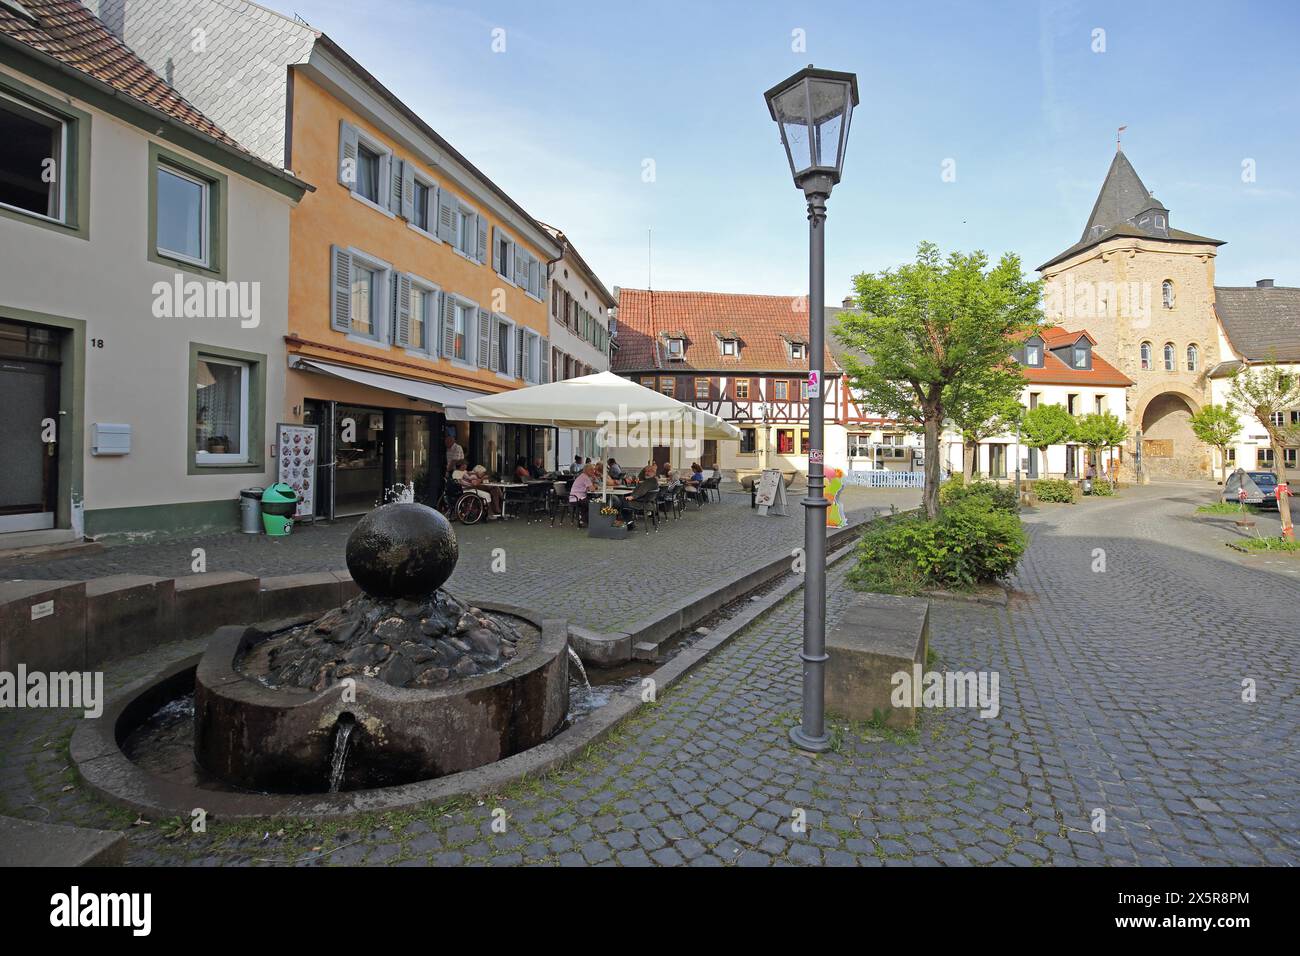 Rapportierplatz avec fontaine, porte inférieure historique, porte de ville, tour de ville, pub de rue, People, Meisenheim, Rhénanie-Palatinat, Allemagne Banque D'Images